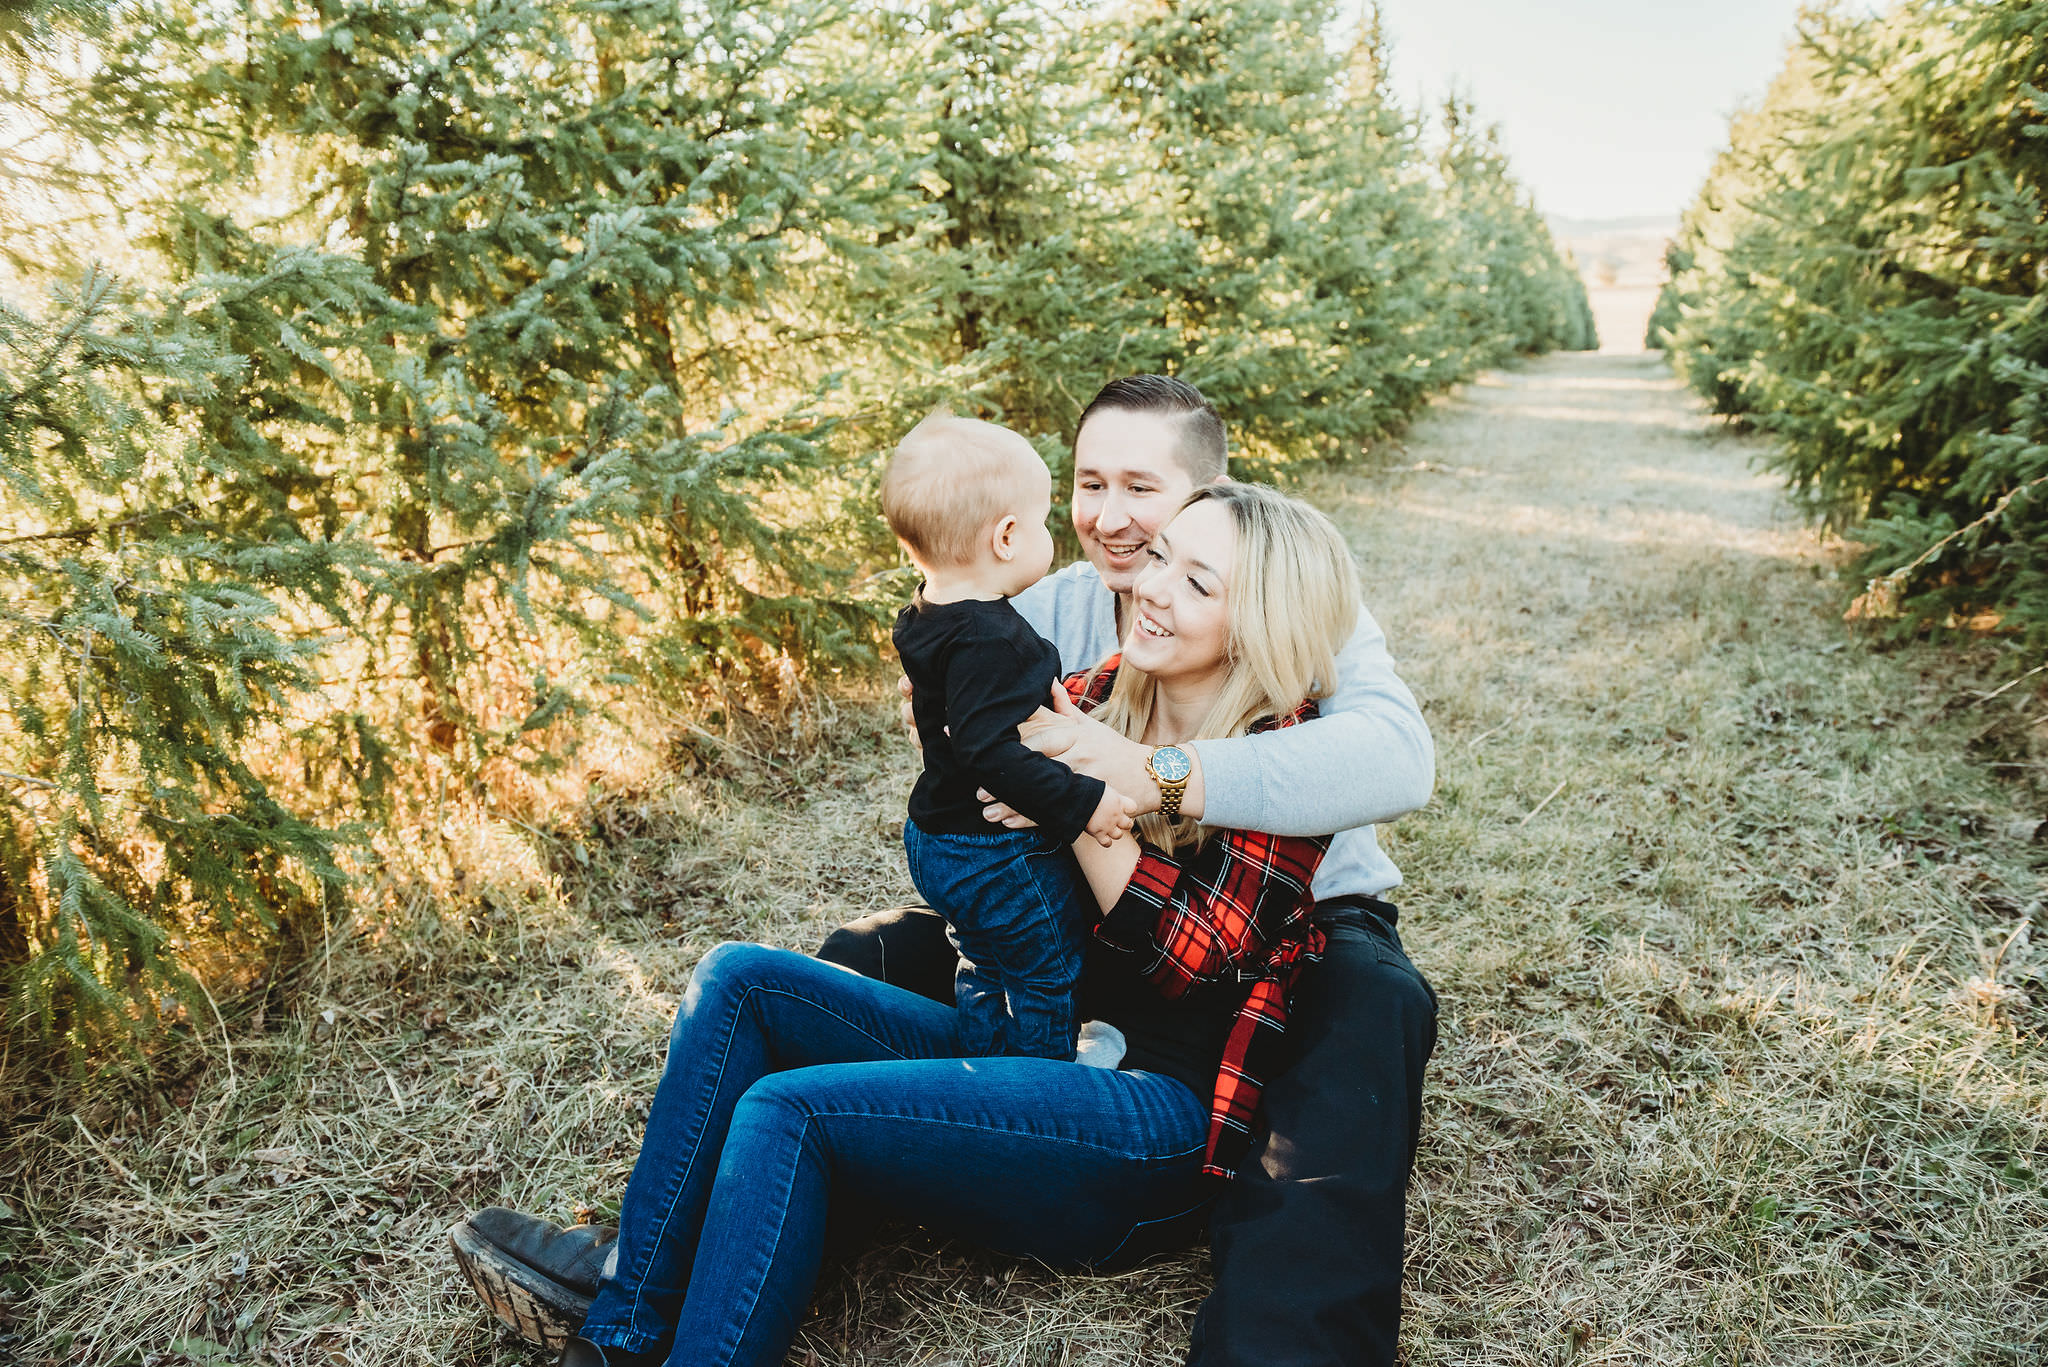 Holiday Tree Farm Mini Session Family and Children Portrait Photographer Idaho Falls Jenna Boshart Photography